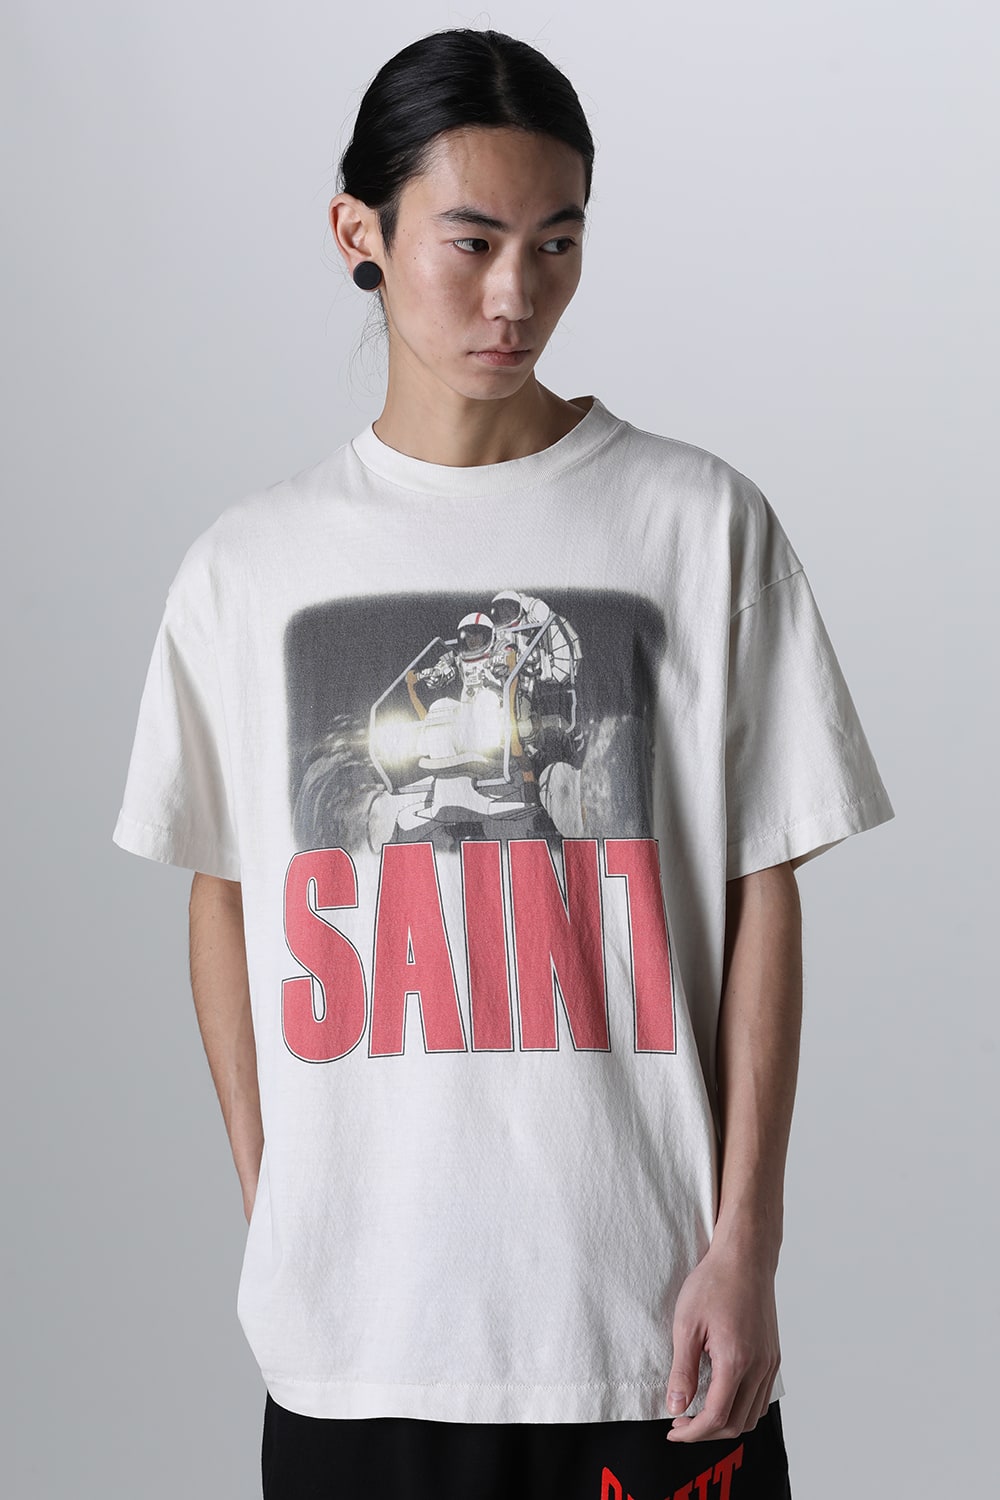 最高の品質 初期 正規店購入 saint michael TEE Tシャツ Sサイズ ...